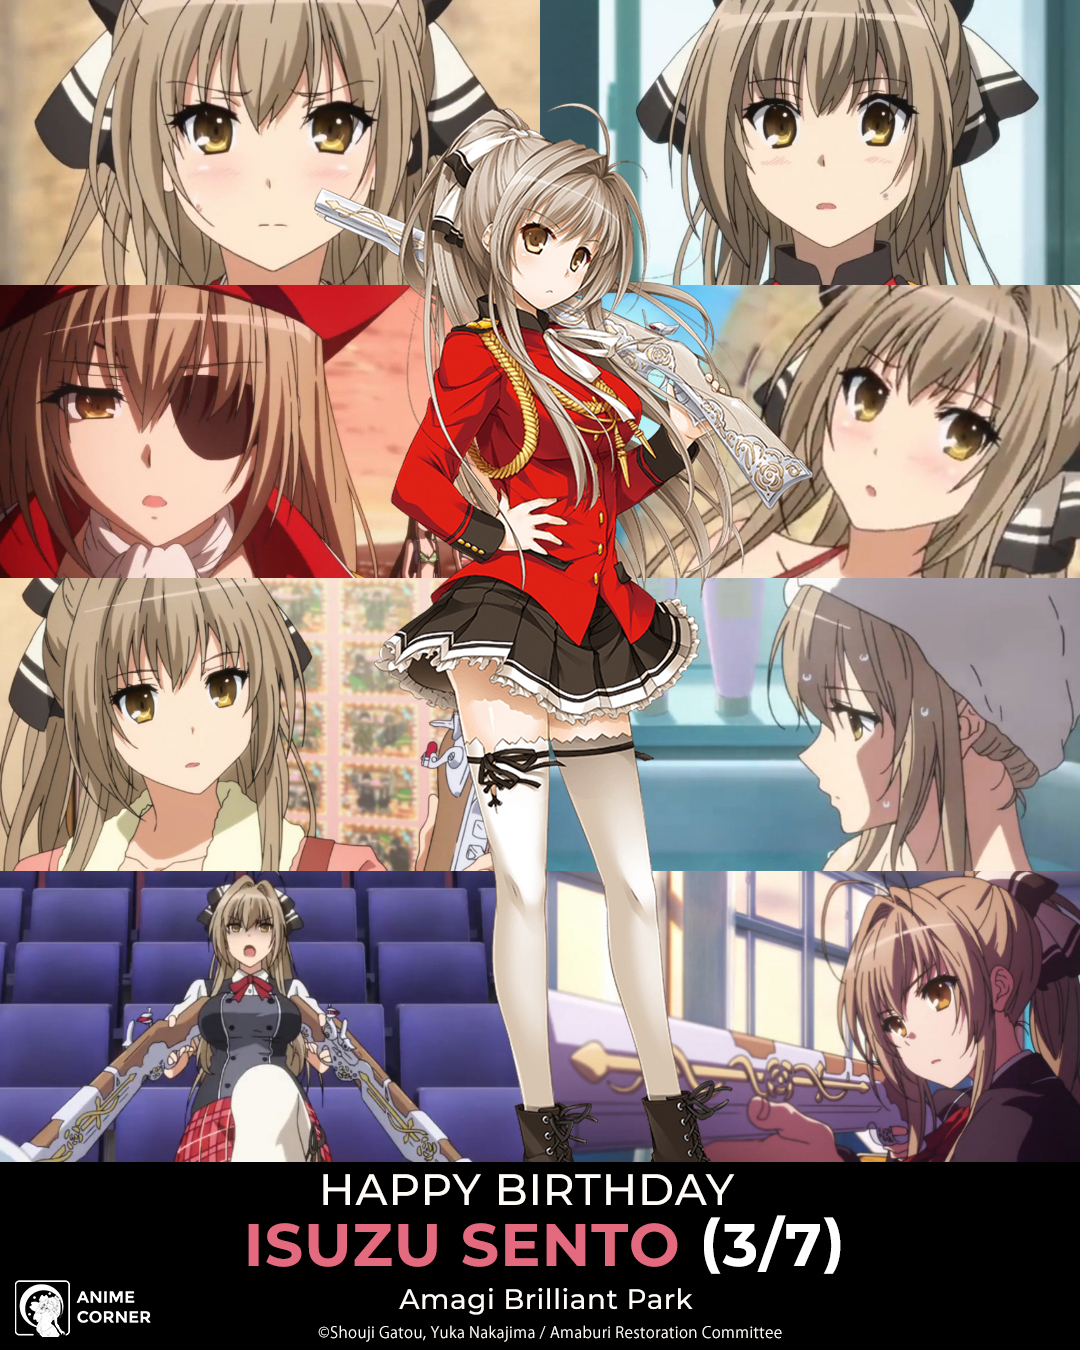 Anime Corner on X: Happy birthday to the rebellious Izumi